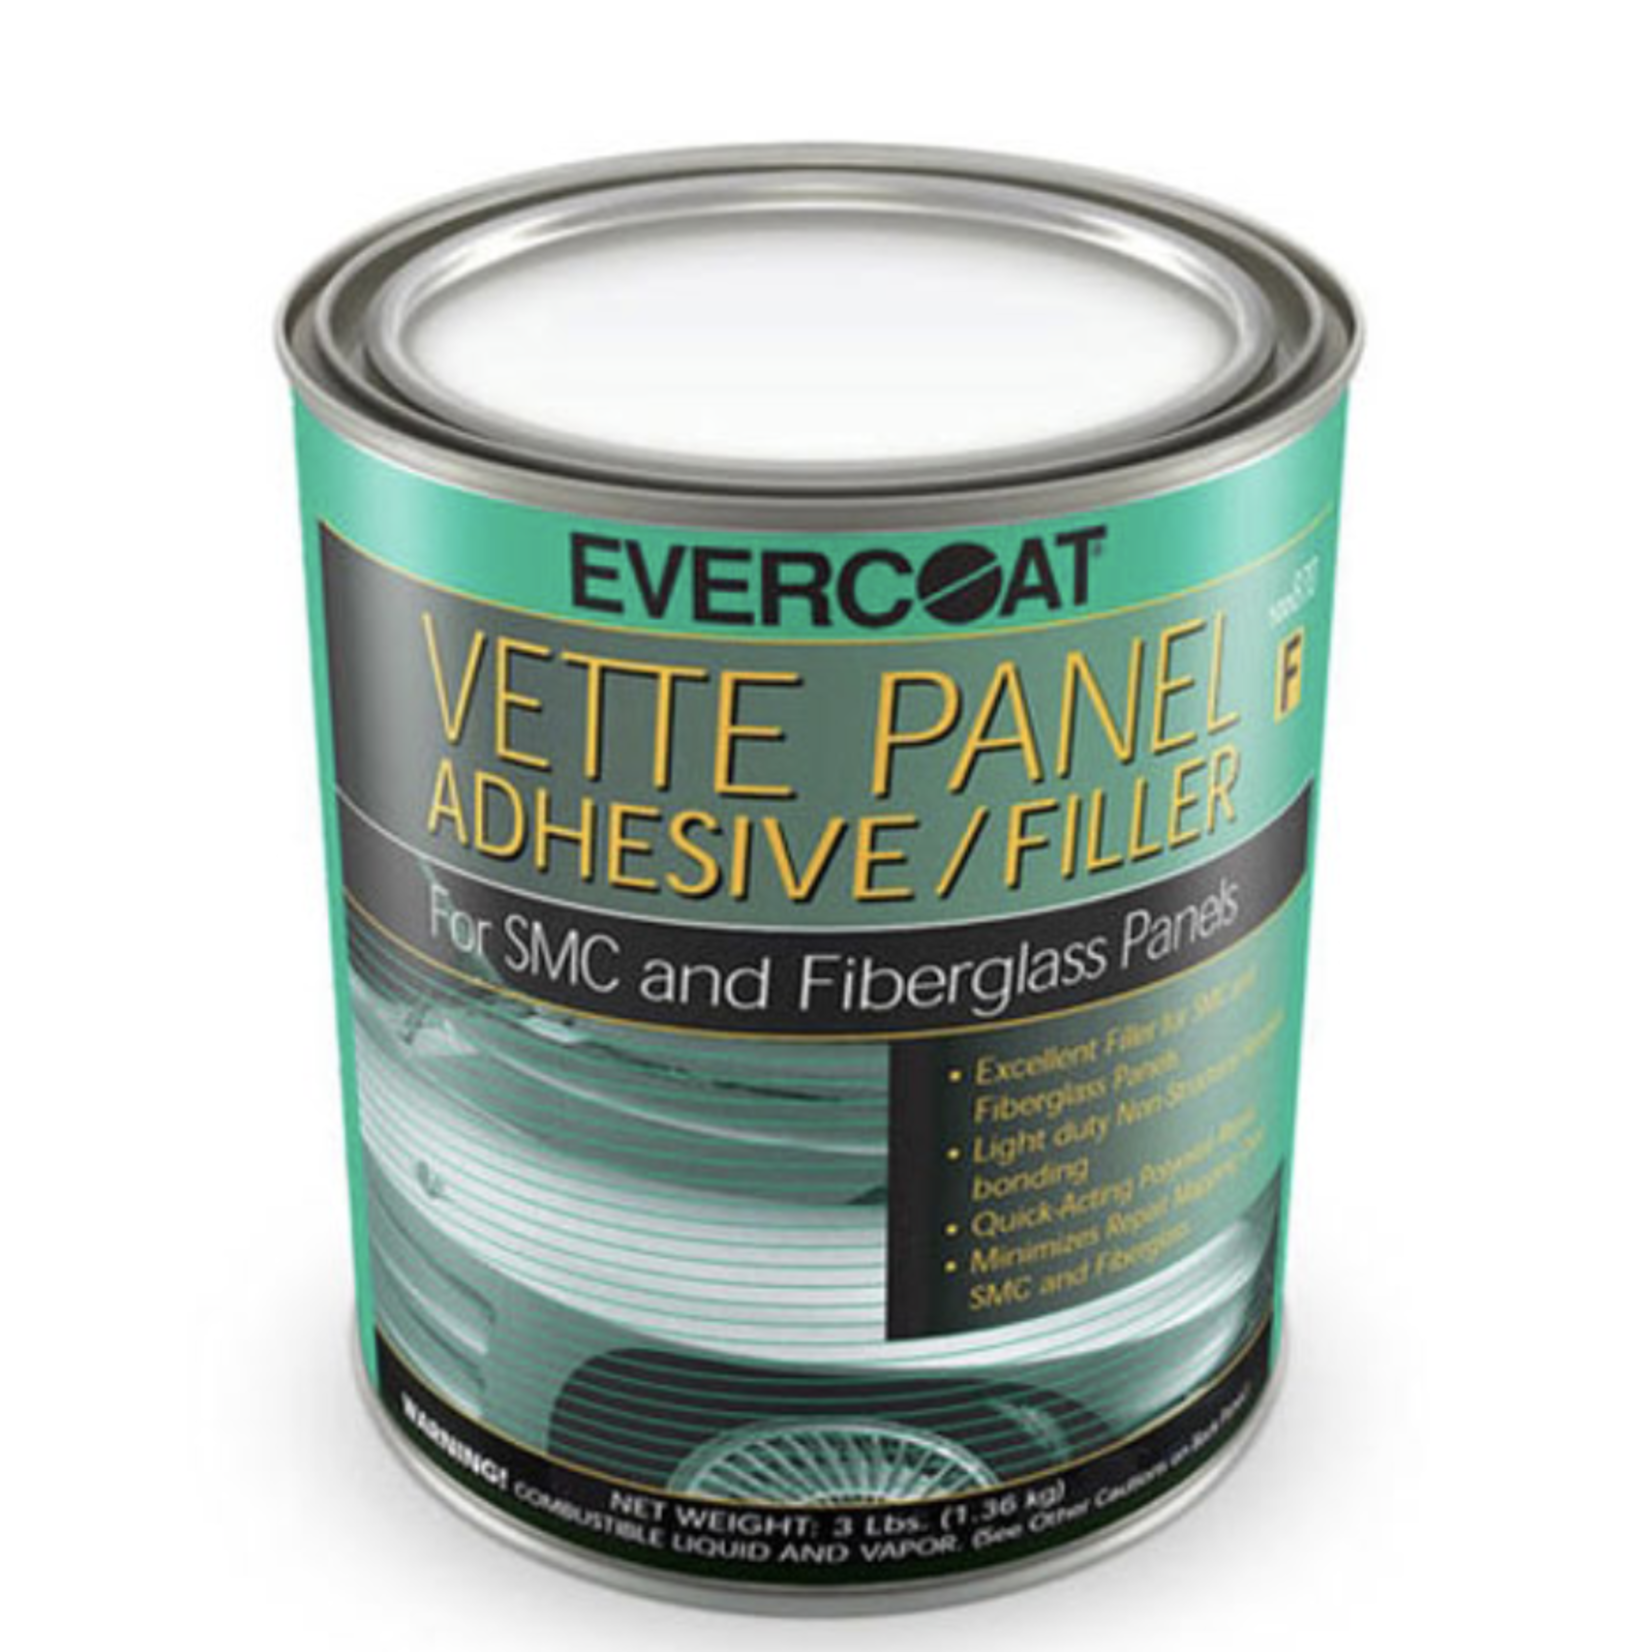 EVERCOAT Evercoat Vette Panel Adhesive™ Filler